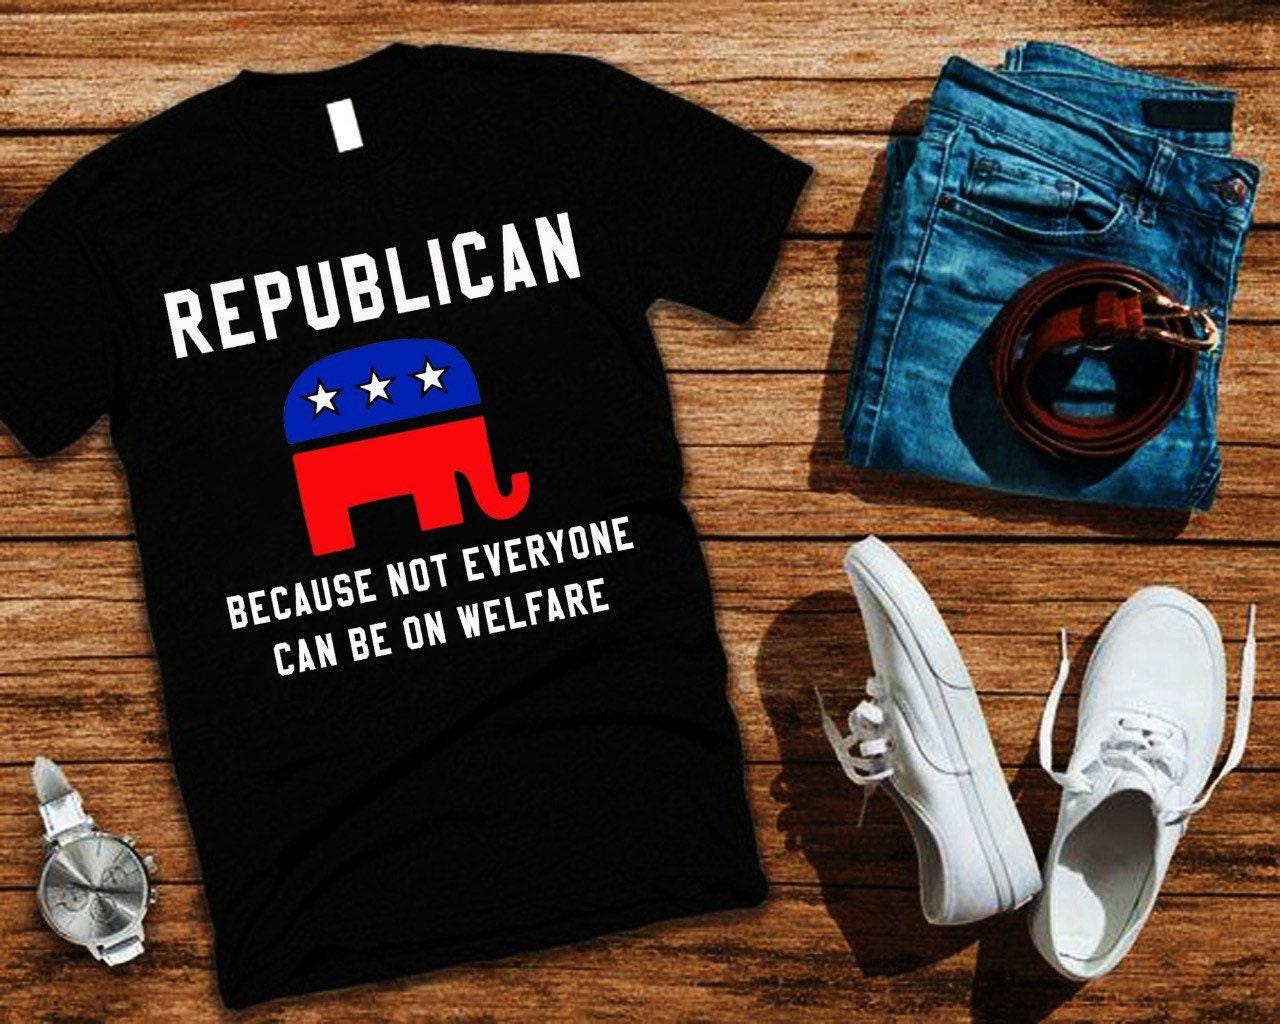 Respublikonų, nes ne visi gali būti ant gerovės marškinėlių, „Pro Trump“ politinių konservatorių marškinėlių, juokingų konservatorių unisex MAGA marškinėlių – plusminusco.com